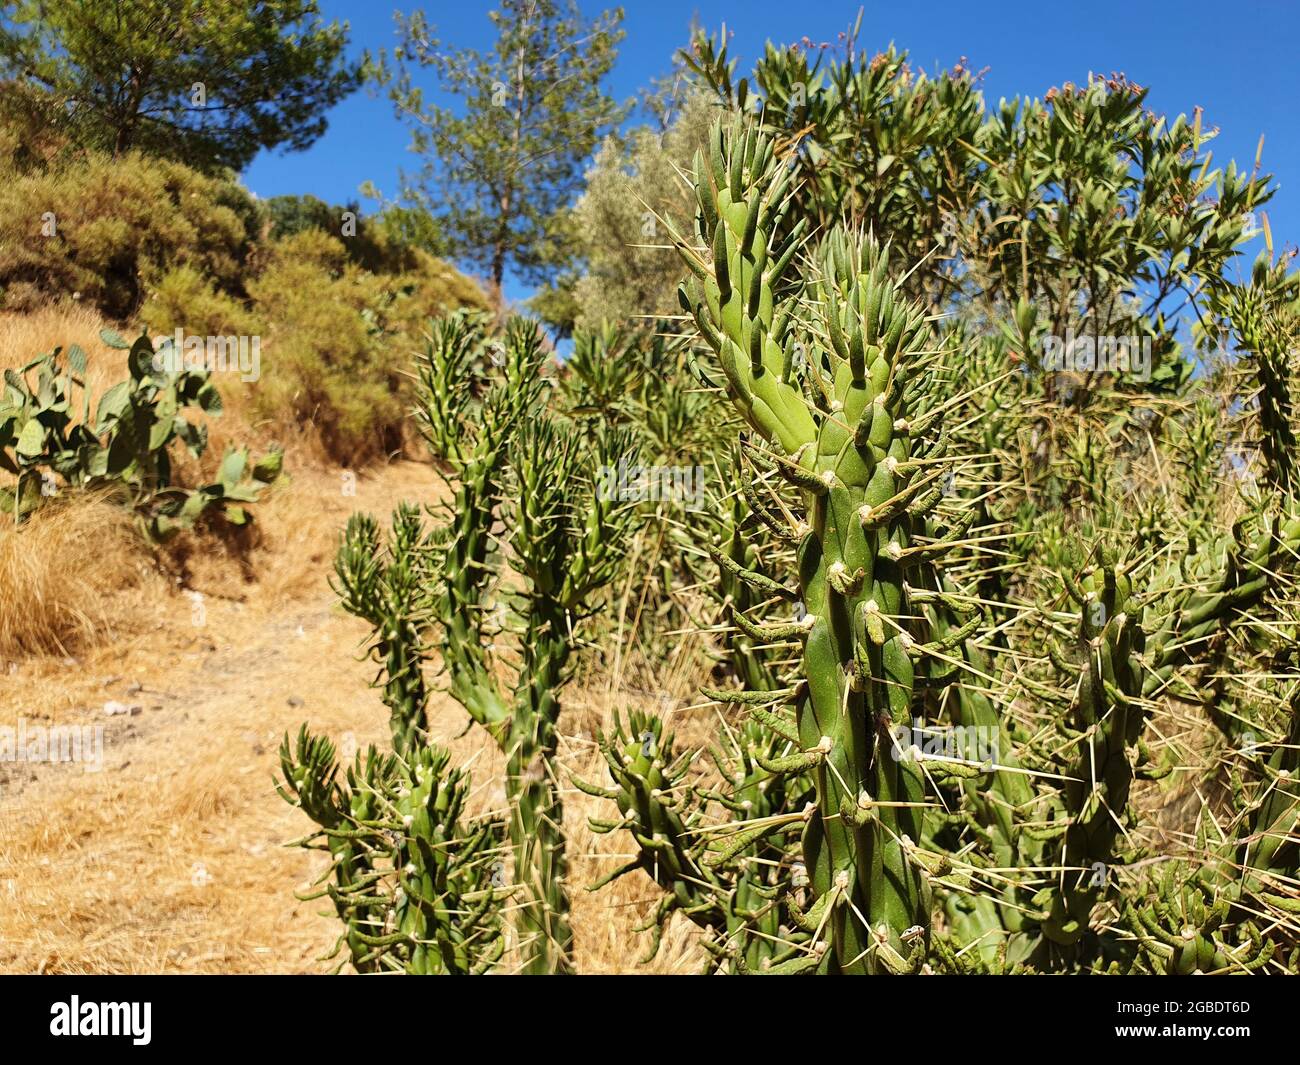 Kakteen, die in einem Land mit heißem Klima wachsen. Schöne, große und dornige Pflanzen. Stockfoto